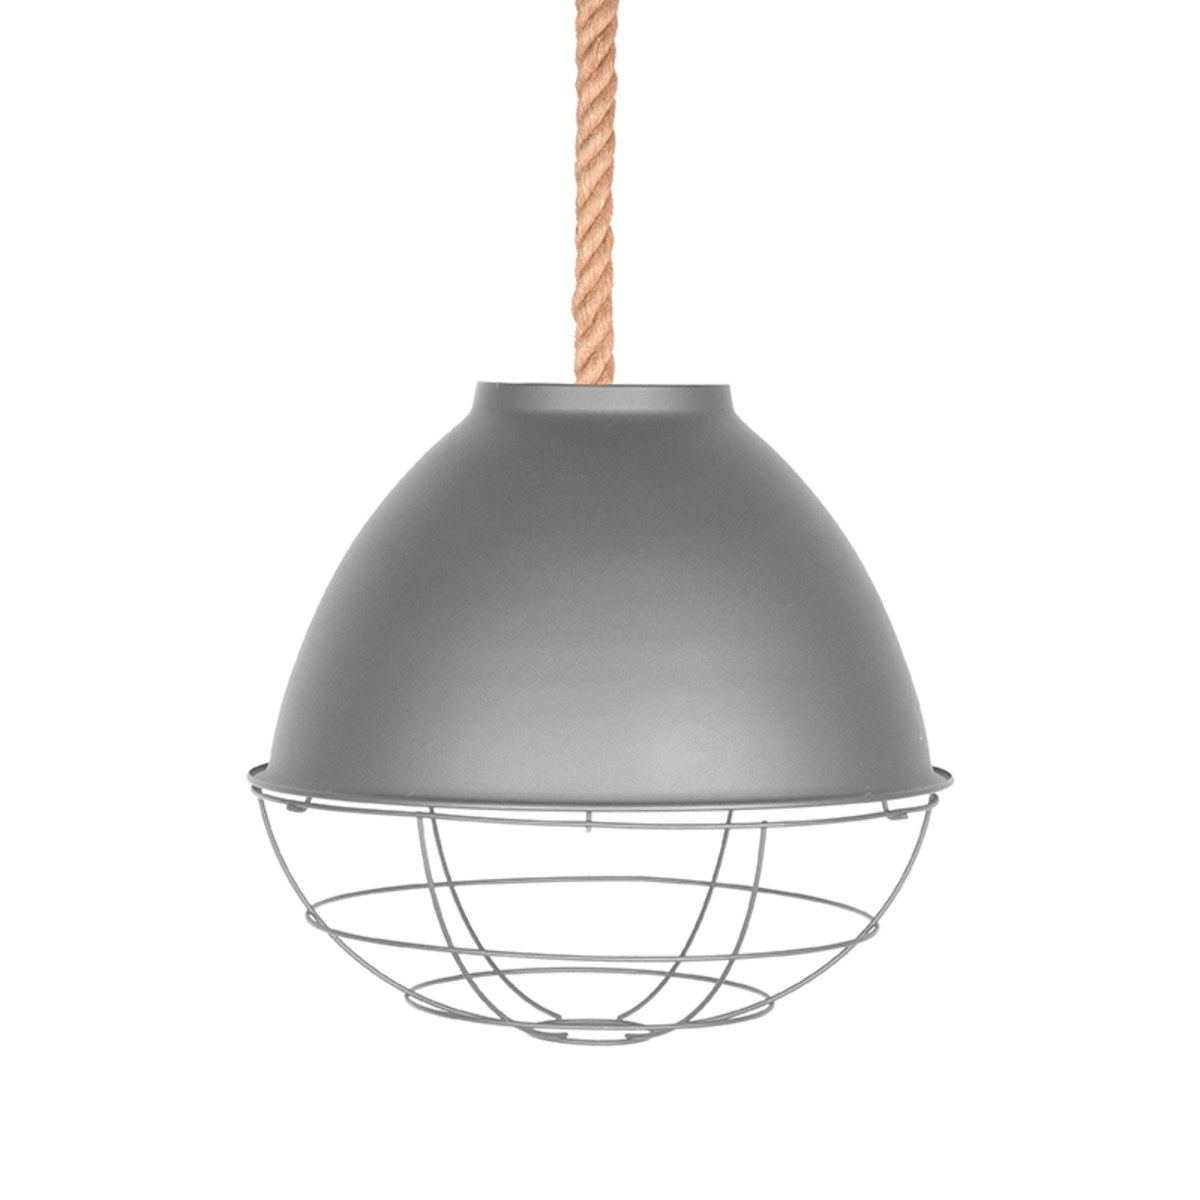  Hanglamp Trier - Concrete - Metaal afbeelding 1